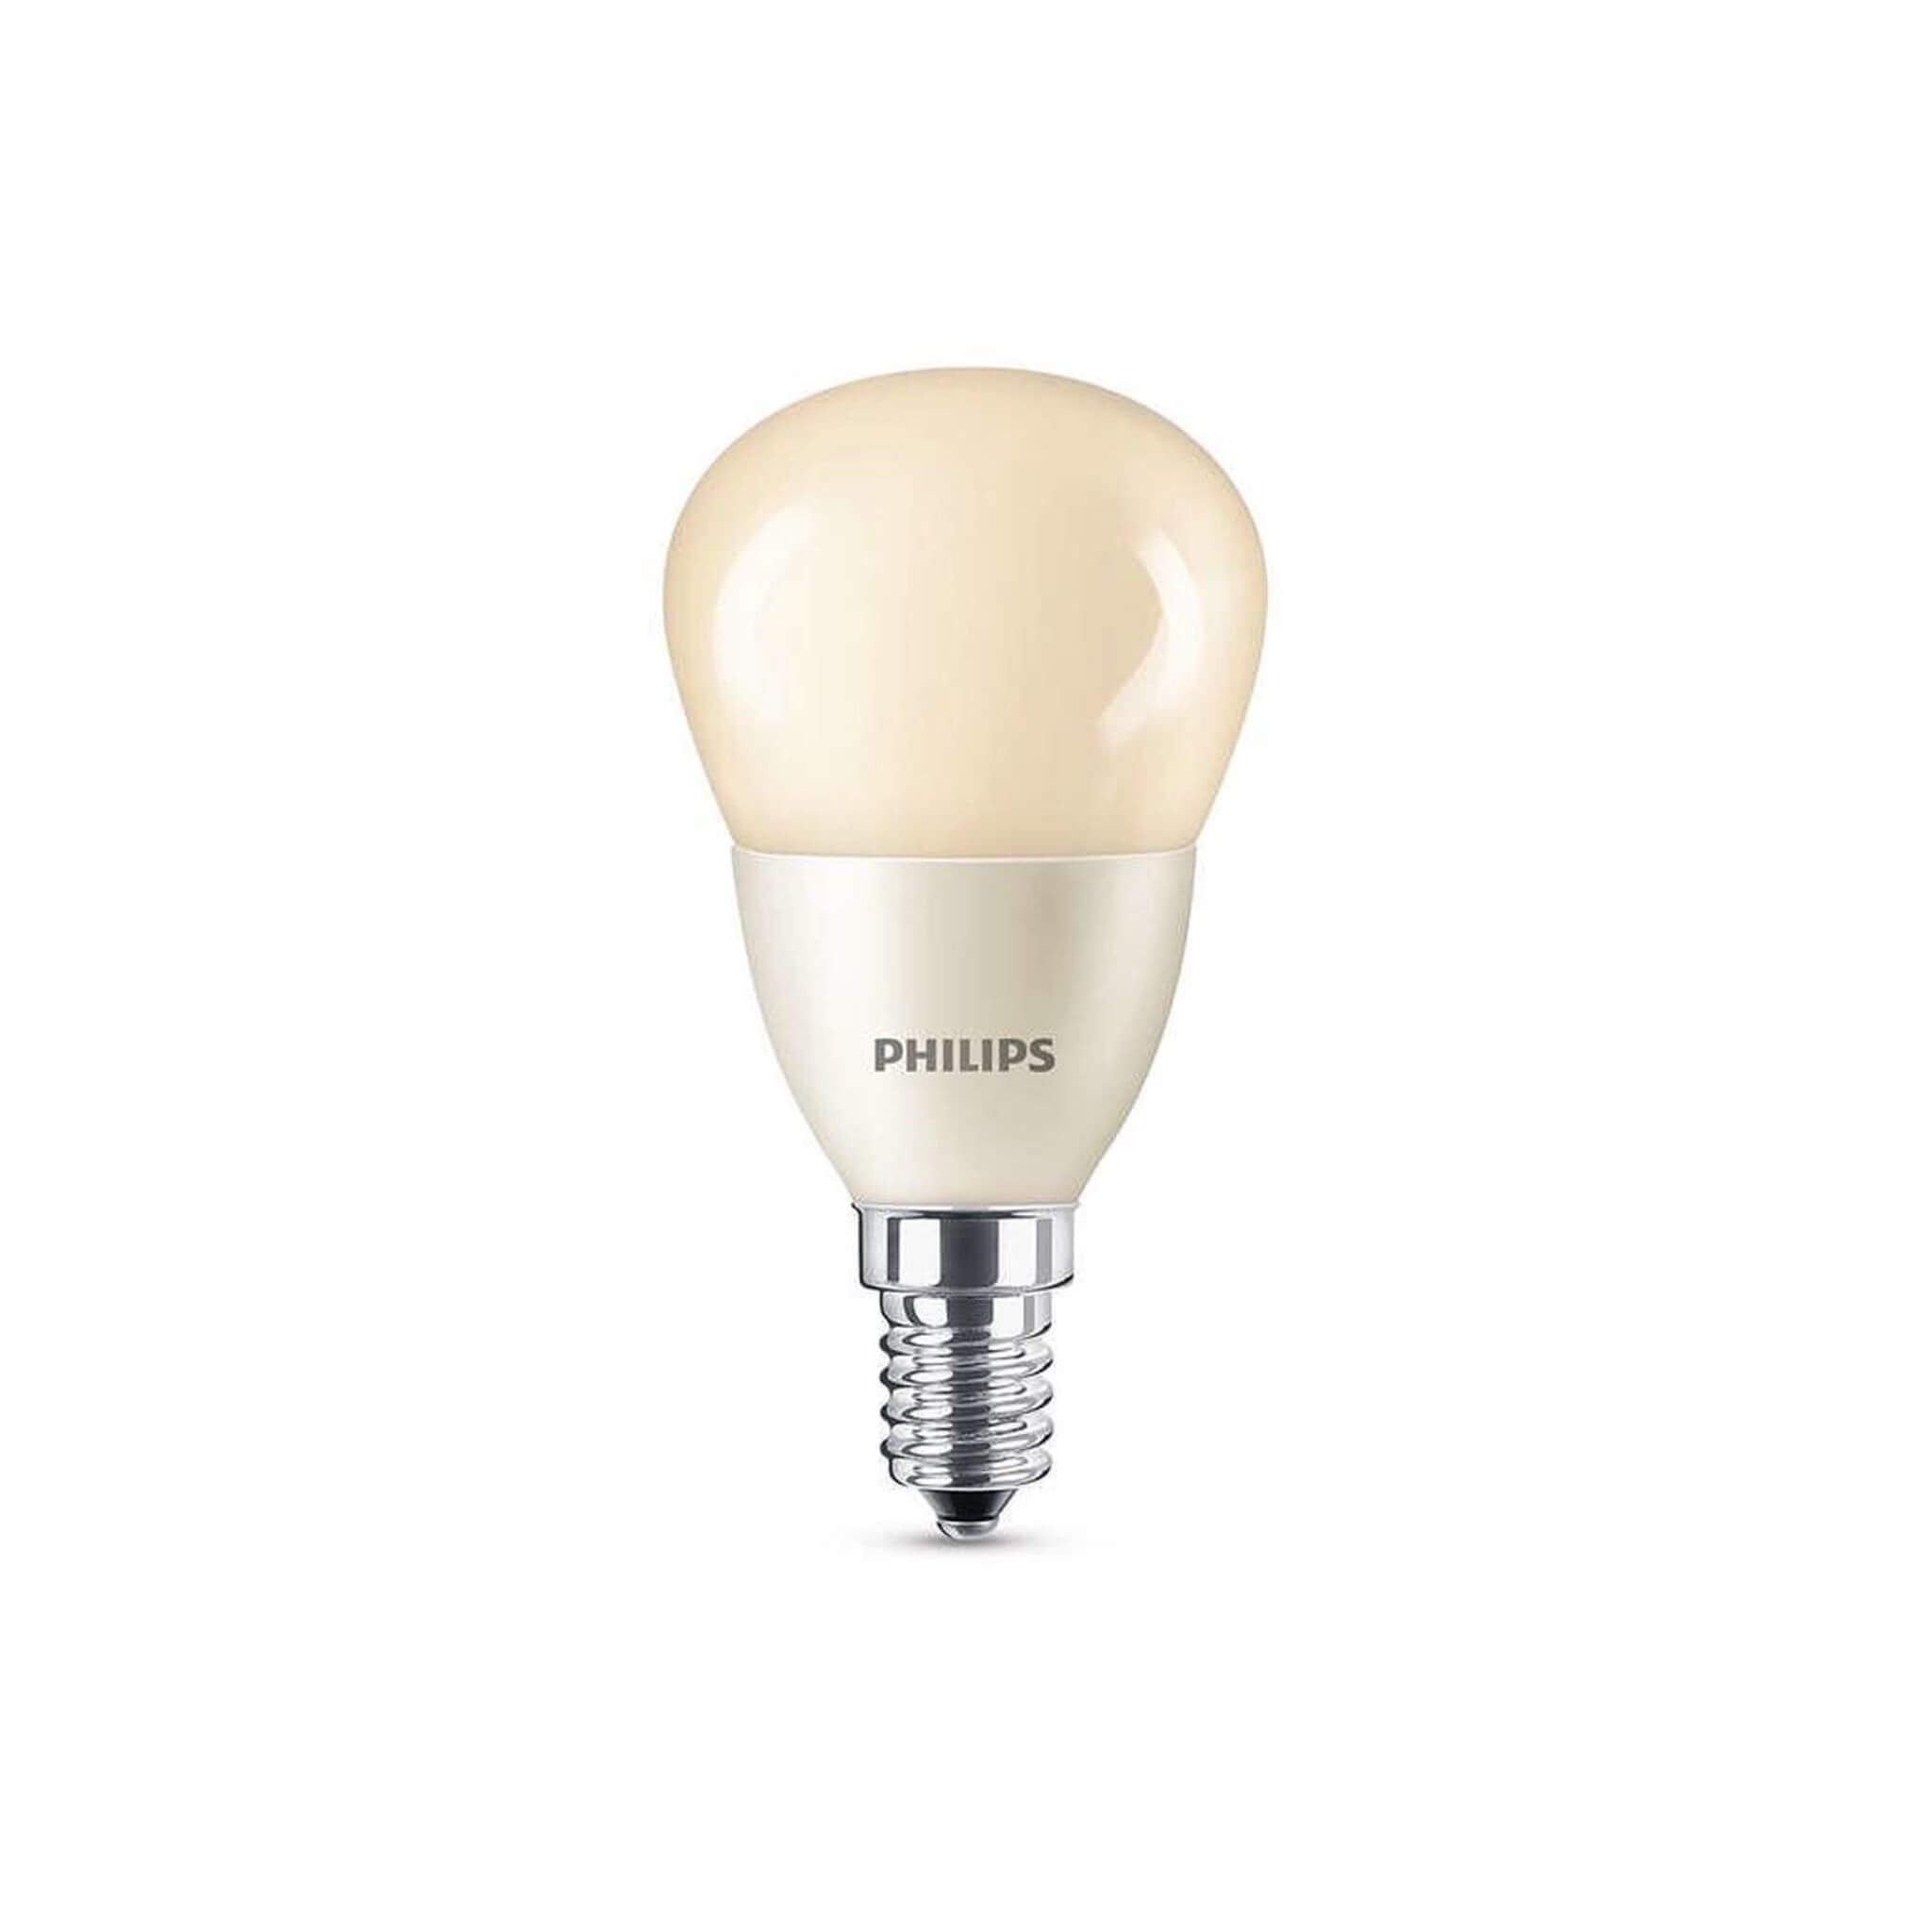 Vorming verkenner munt Philips LED Lamp Flame - E14 fitting - Dimbaar warm wit licht - 4W (15 –  LED.nl